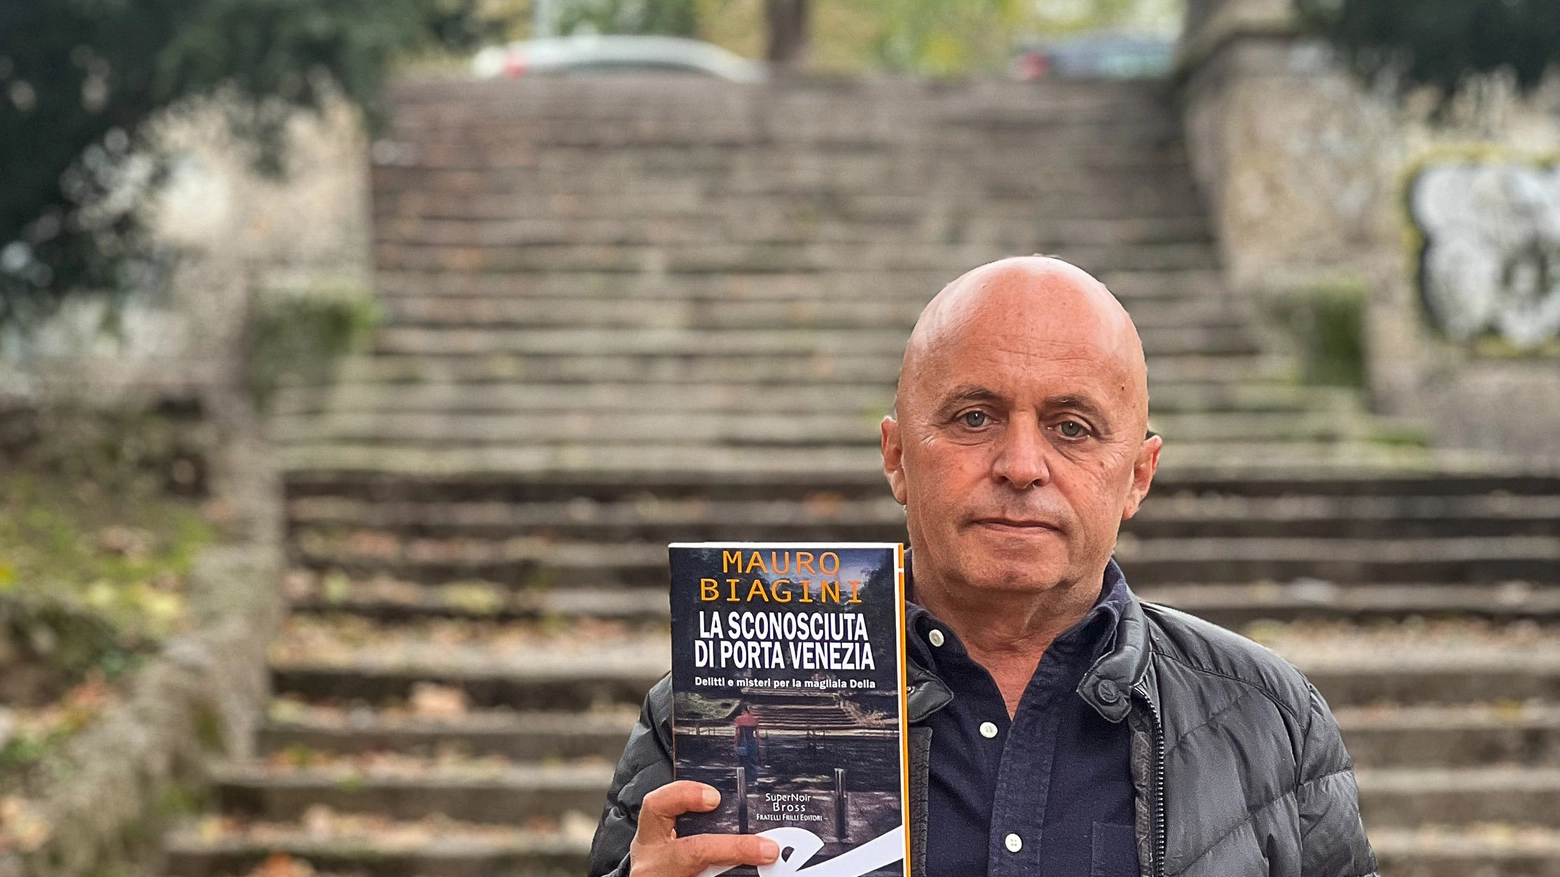 Mauro Biagini presenta la sua ultima fatica letteraria ambientata a Porta Venezia